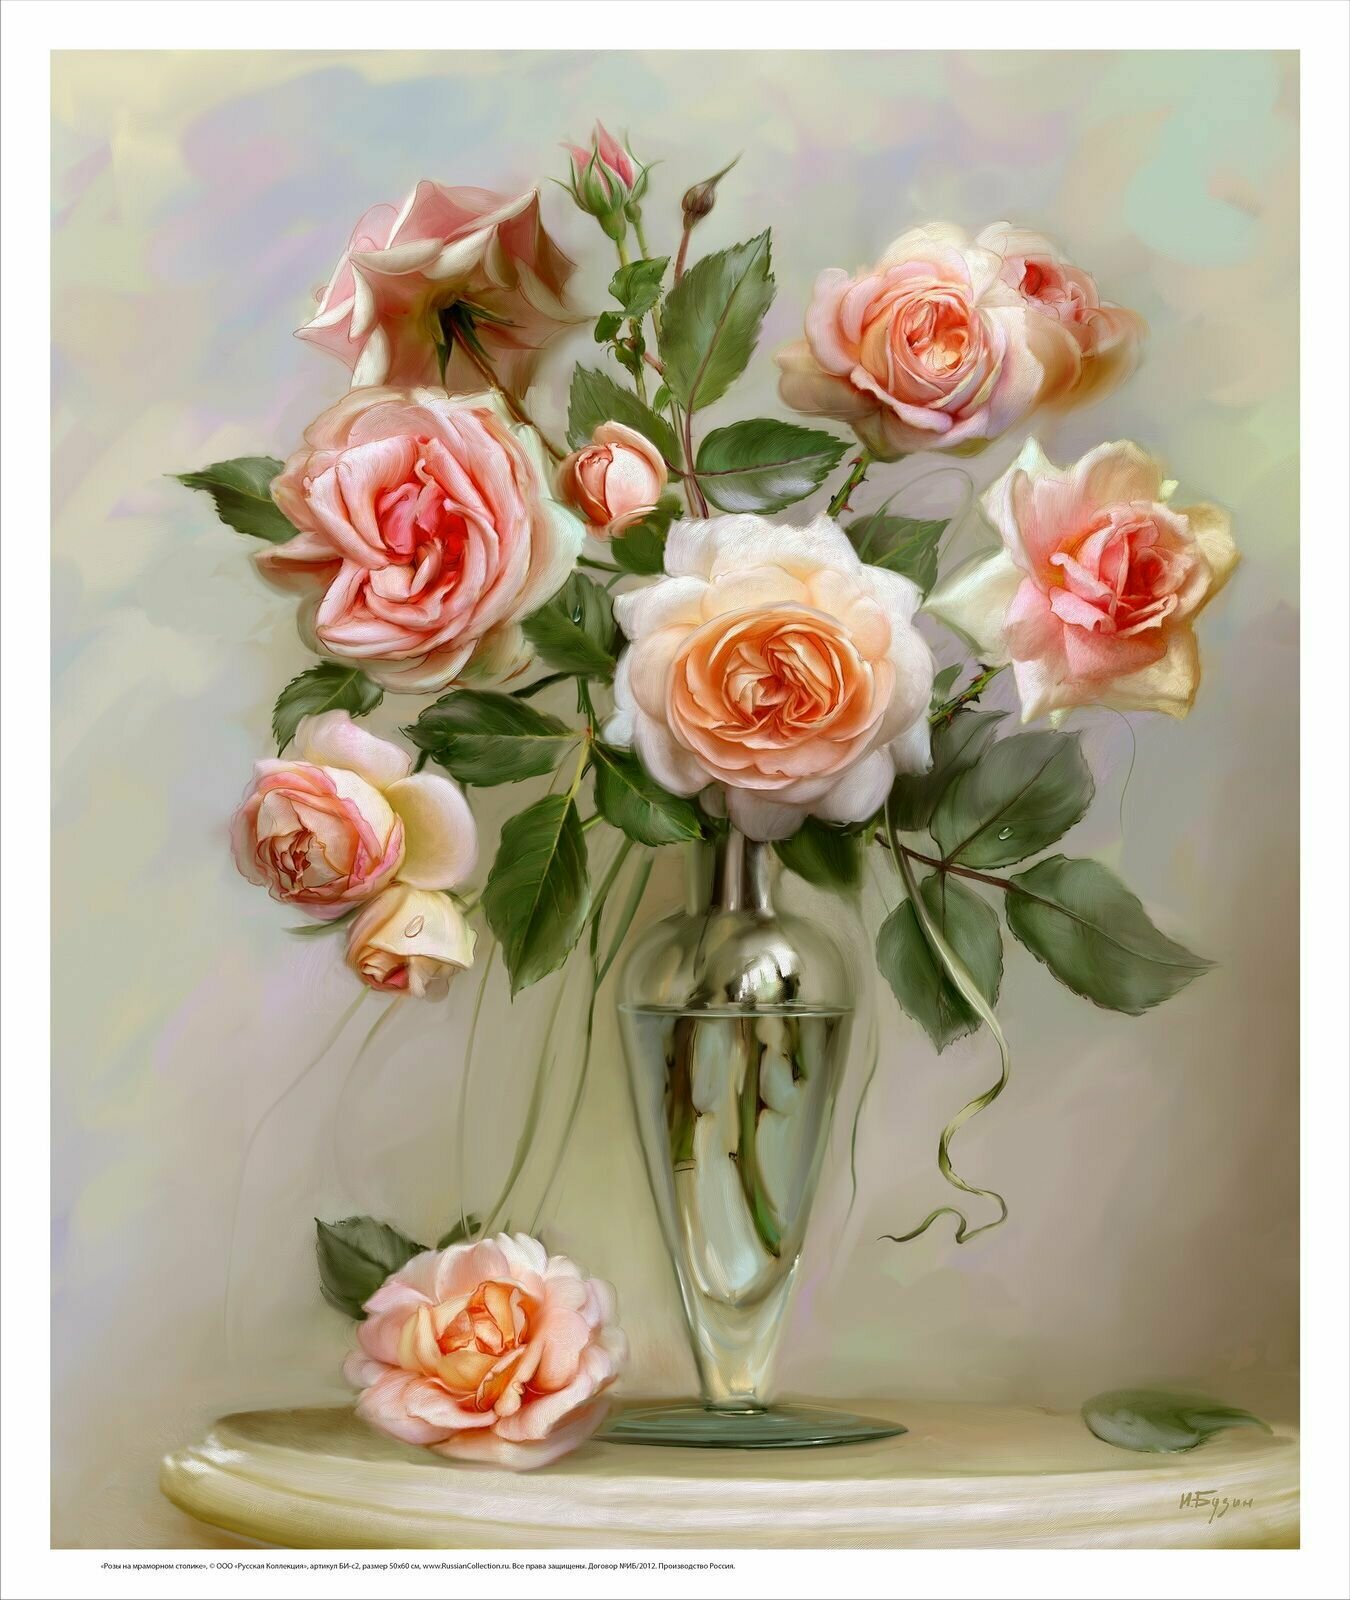 Постер на холсте, "Розы на мраморном столике", 50х60 см, художник - Бузин Игорь. Холст в рулоне, Арт. БИ-р2